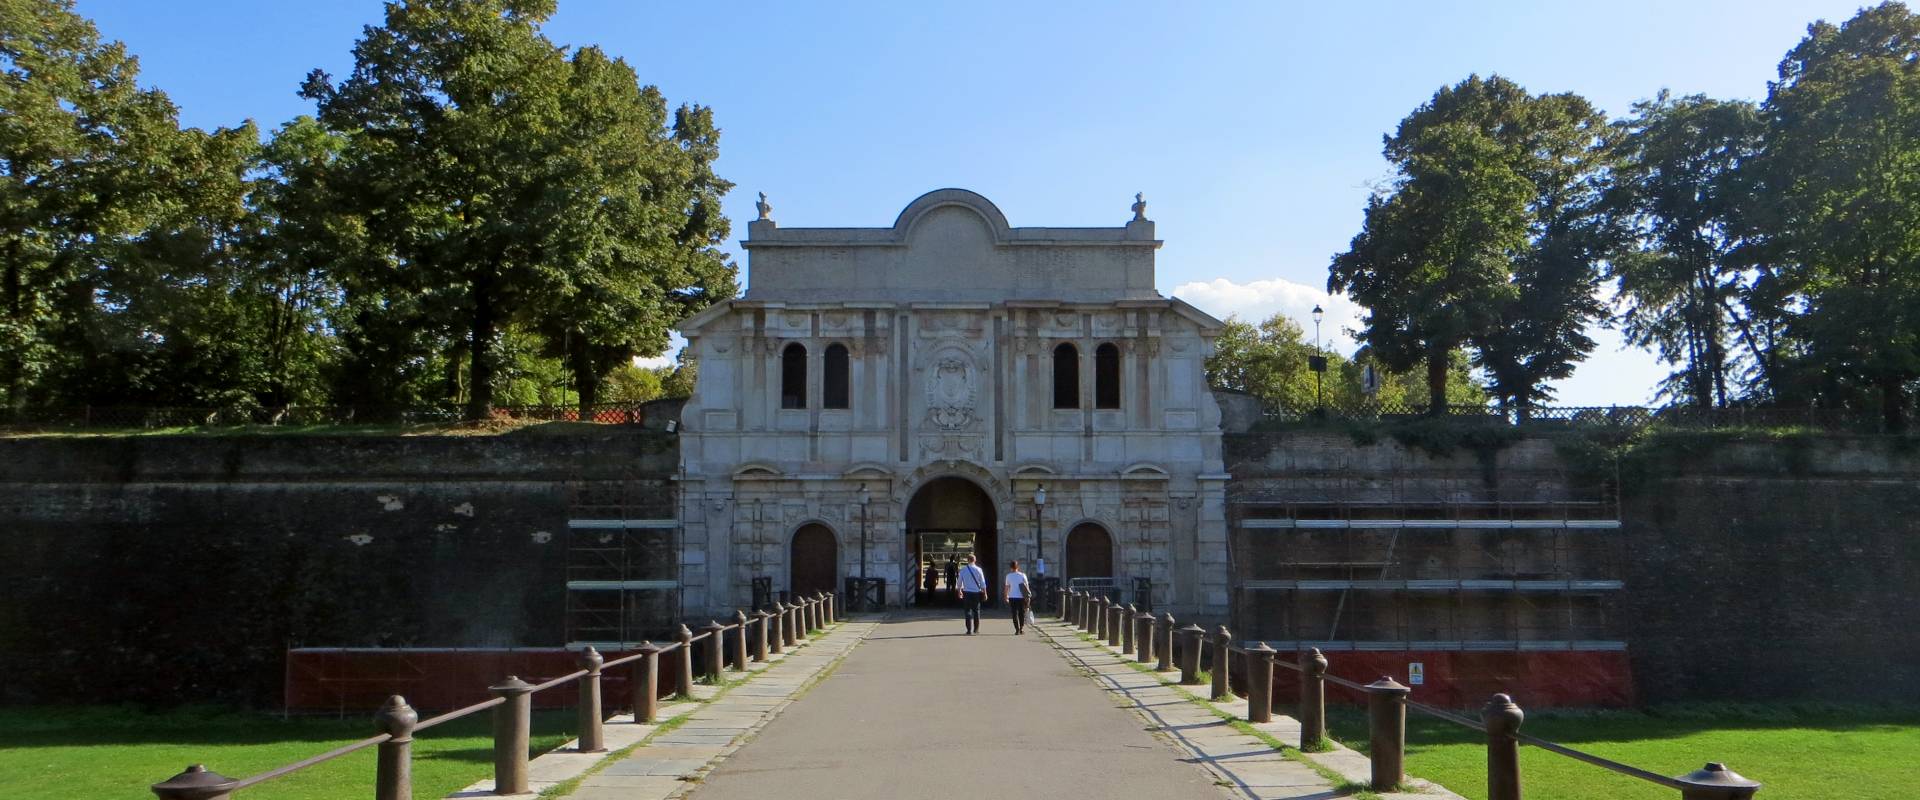 Cittadella di Parma - ingresso monumentale 4 2019-09-30 foto di Parma198